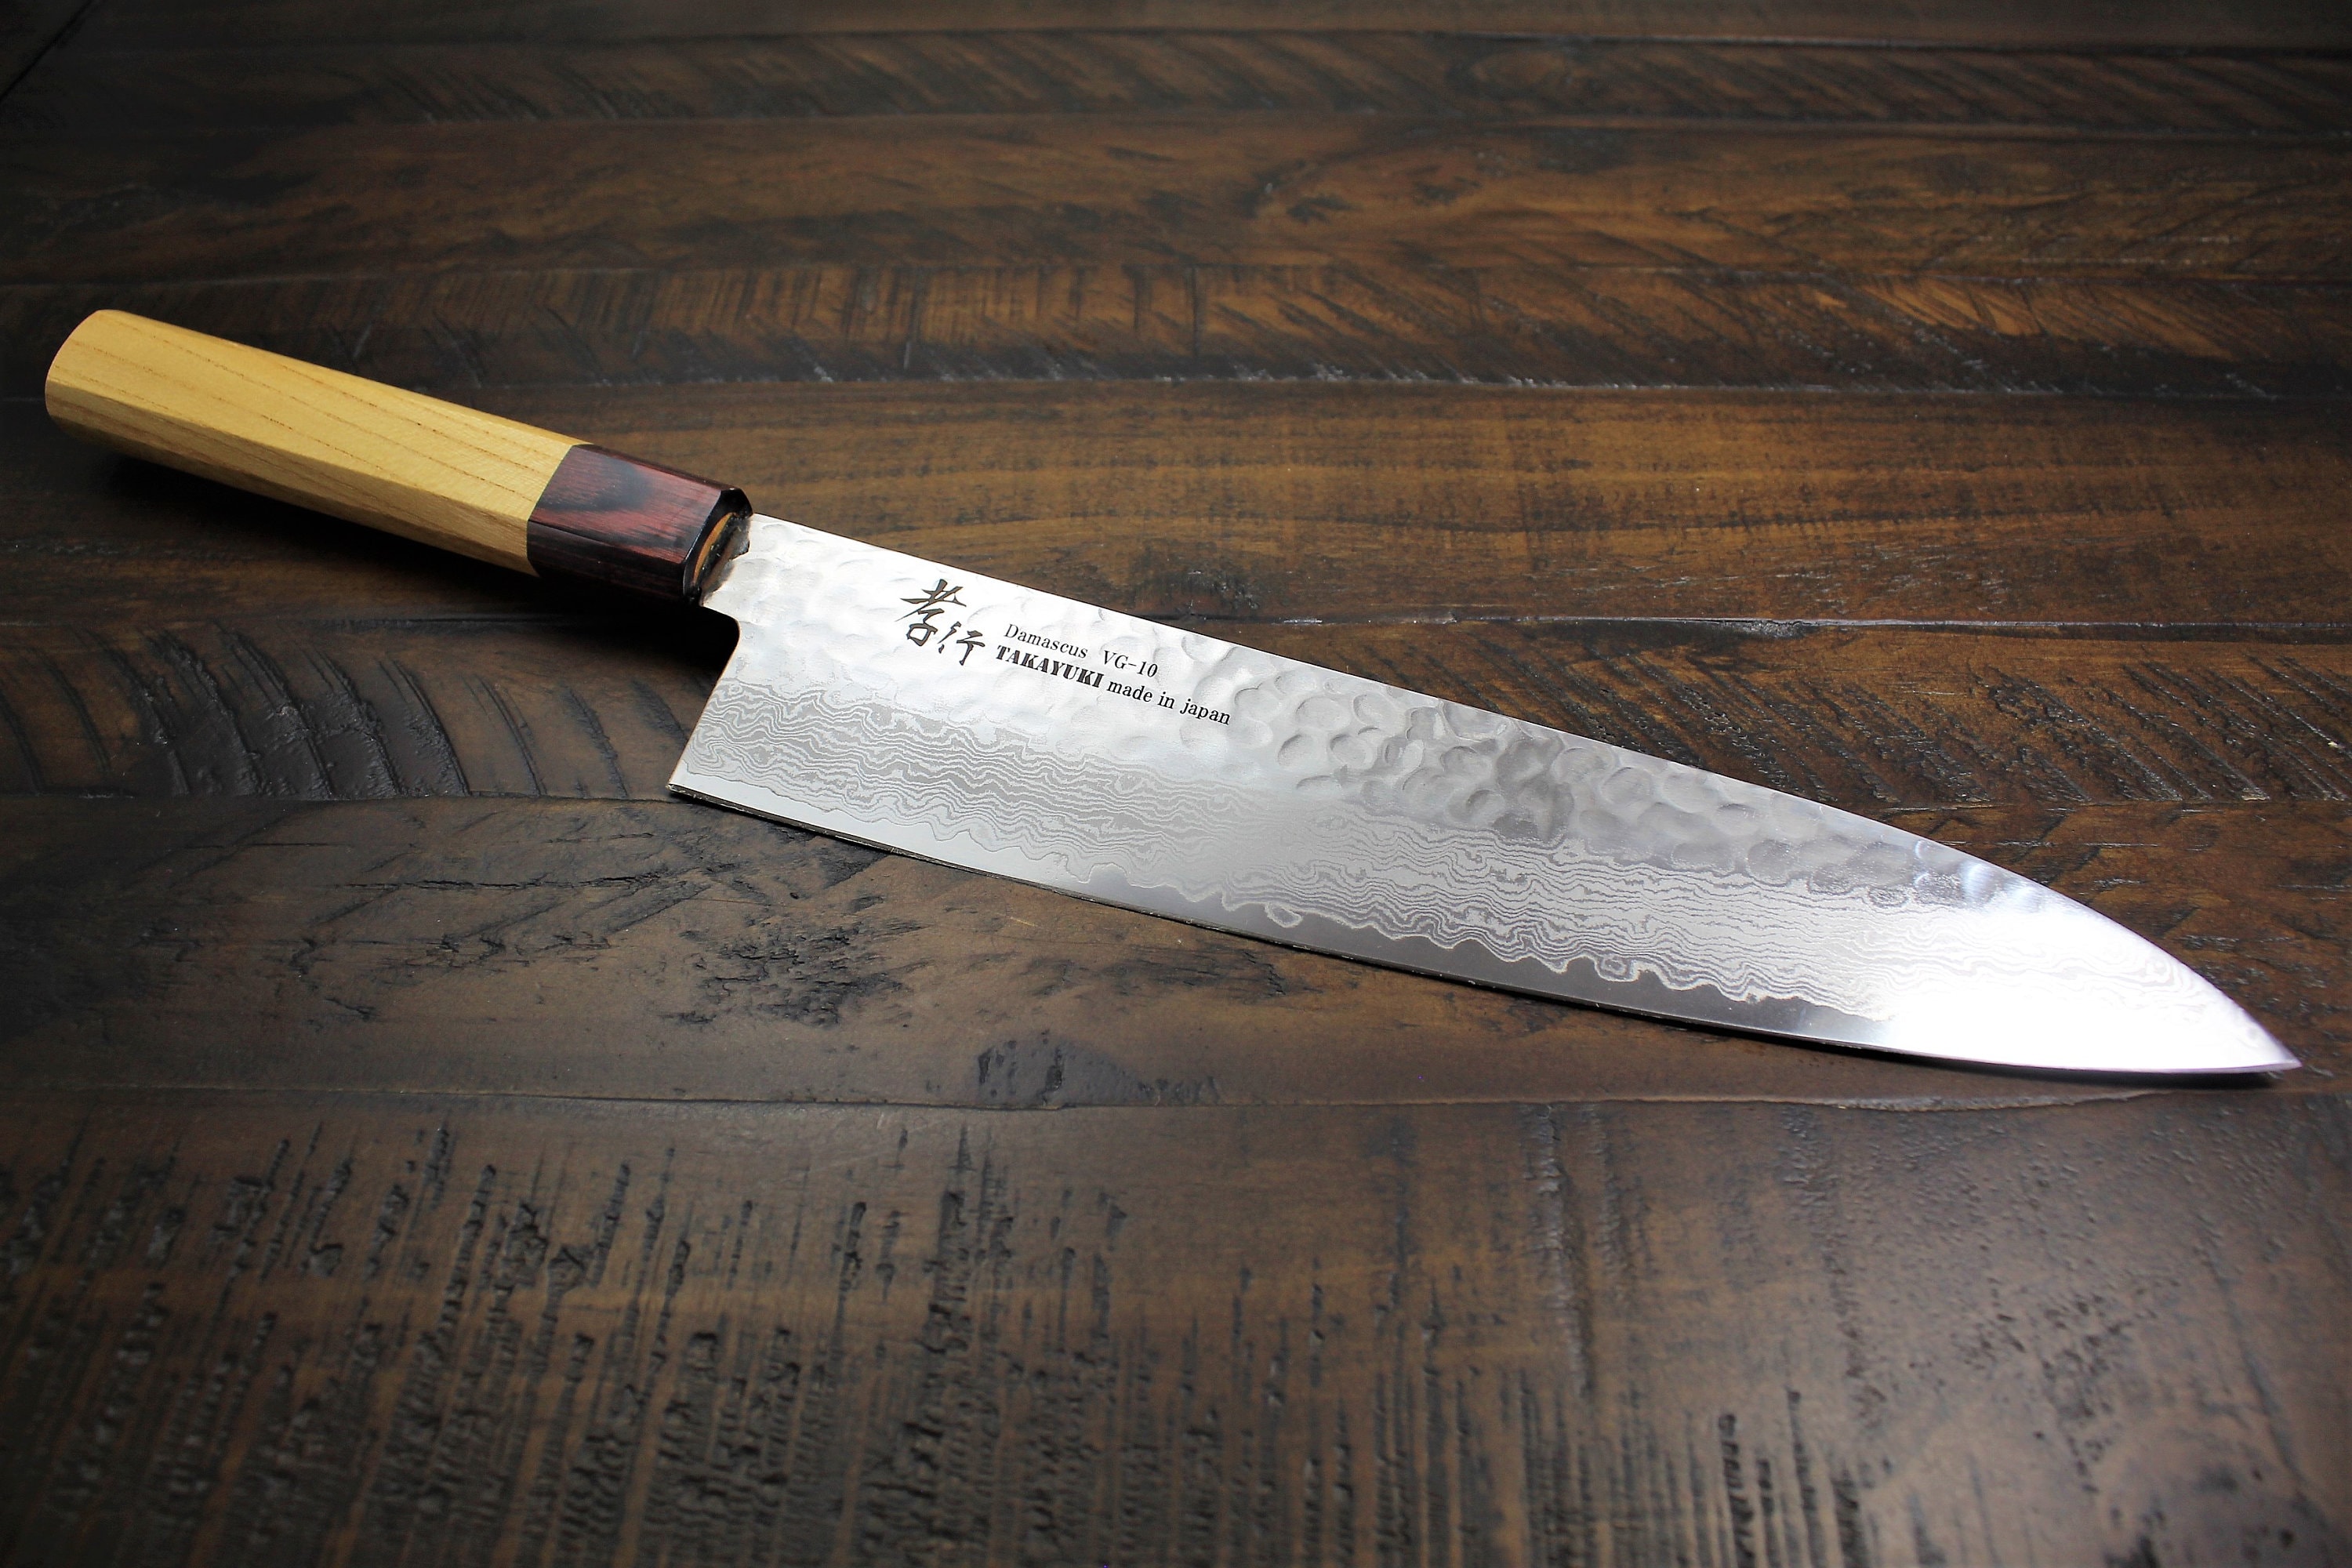  KYOKU Gin Series - Cuchillo de cocina de 6 pulgadas, cuchillo  japonés VG10 de acero inoxidable de damasco con hoja de iones plateados G10  mango de mosaico G10, cuchillo profesional multiusos